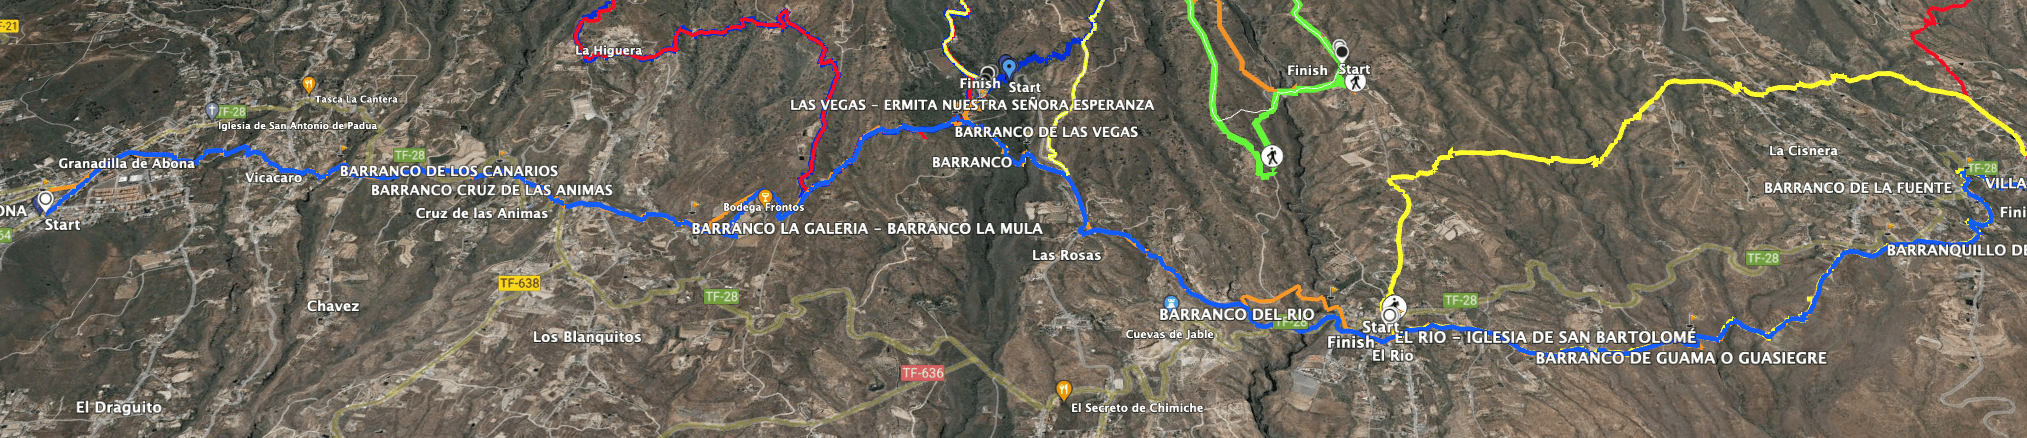 Track der Wanderung Camino Real del Sur Granadilla de Abona bis Villa de Arico